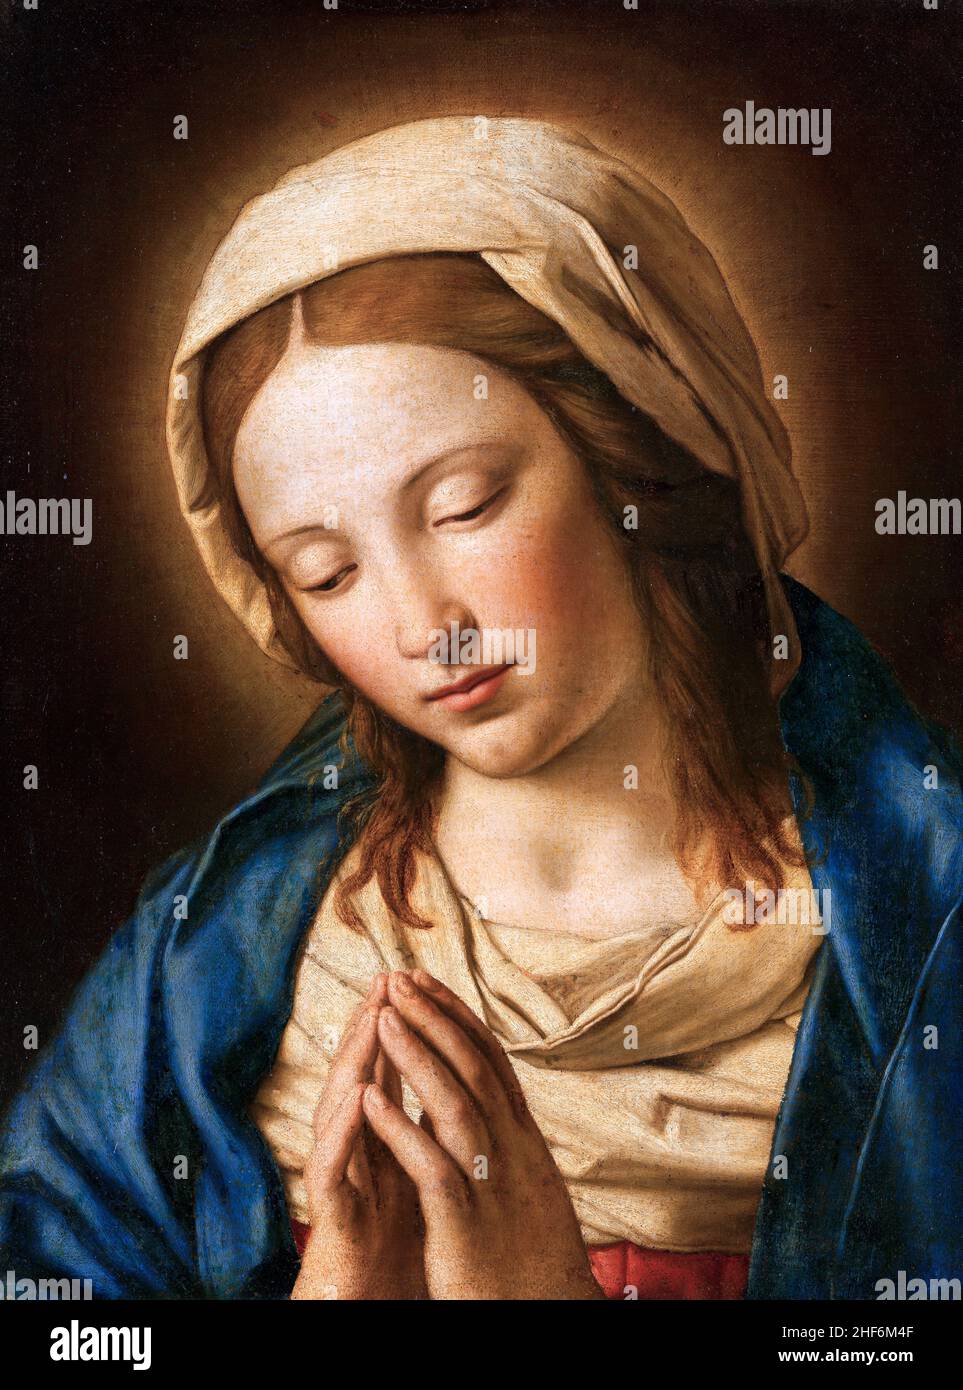 Vierge à la prière après Sassoferrato (Giovanni Battista Salvi da Sassoferrato, 1609-1685), huile sur toile Banque D'Images